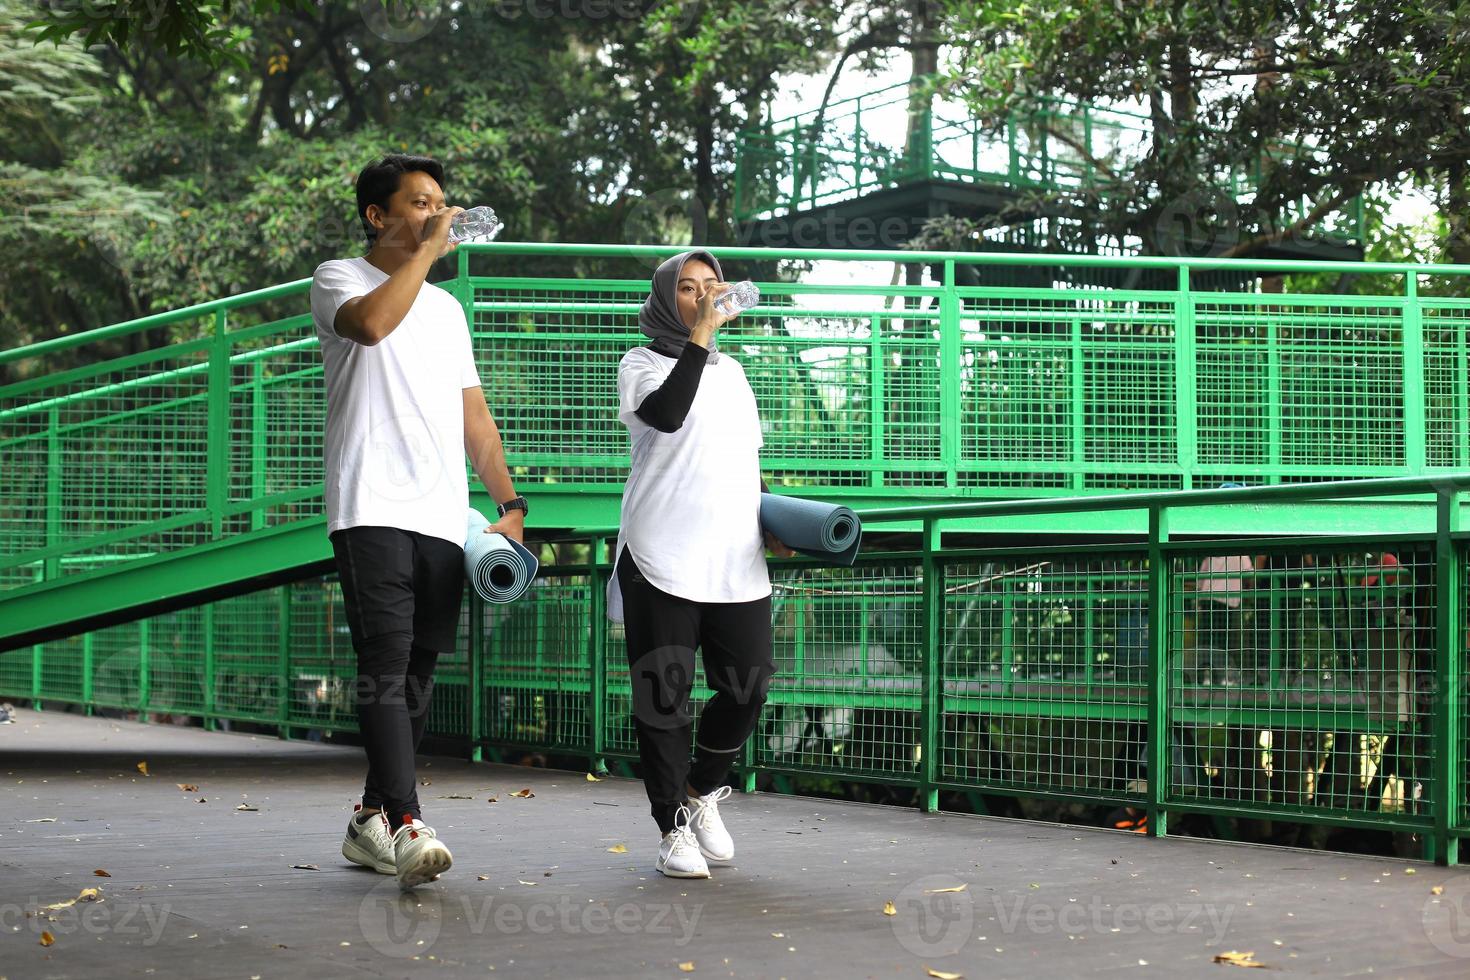 Ungt asiatiskt par dricker vatten efter träningspass medan de går och håller i madrassen efter träningspass i parken. foto